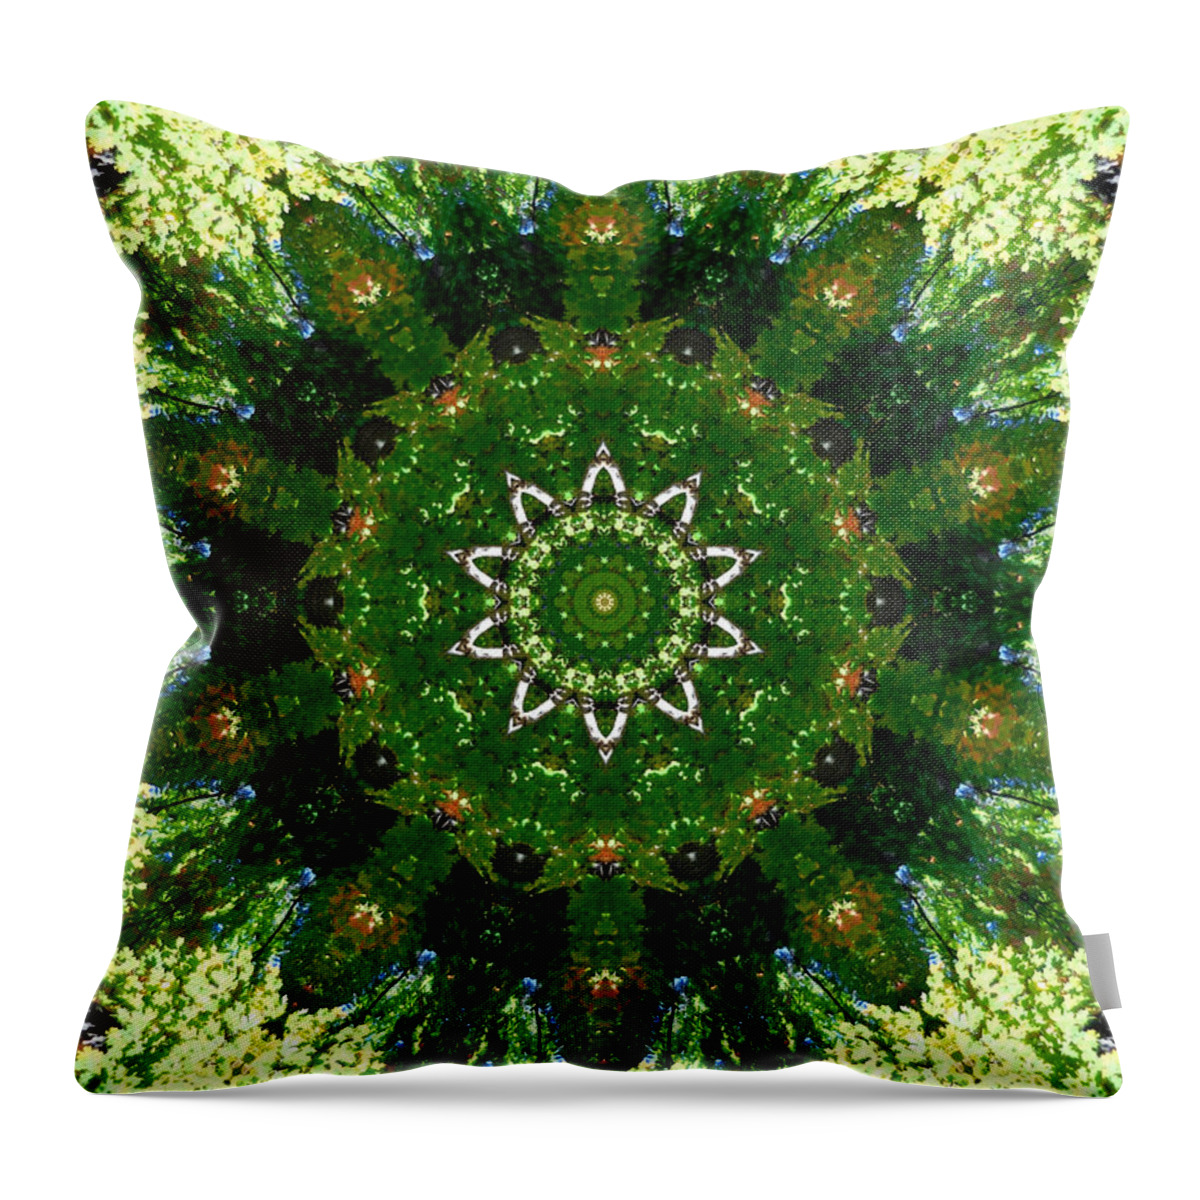 Mandala Kaleidoscopic Design Throw Pillow featuring the painting Mandala Kaleidoscopic Design 13 by Jeelan Clark